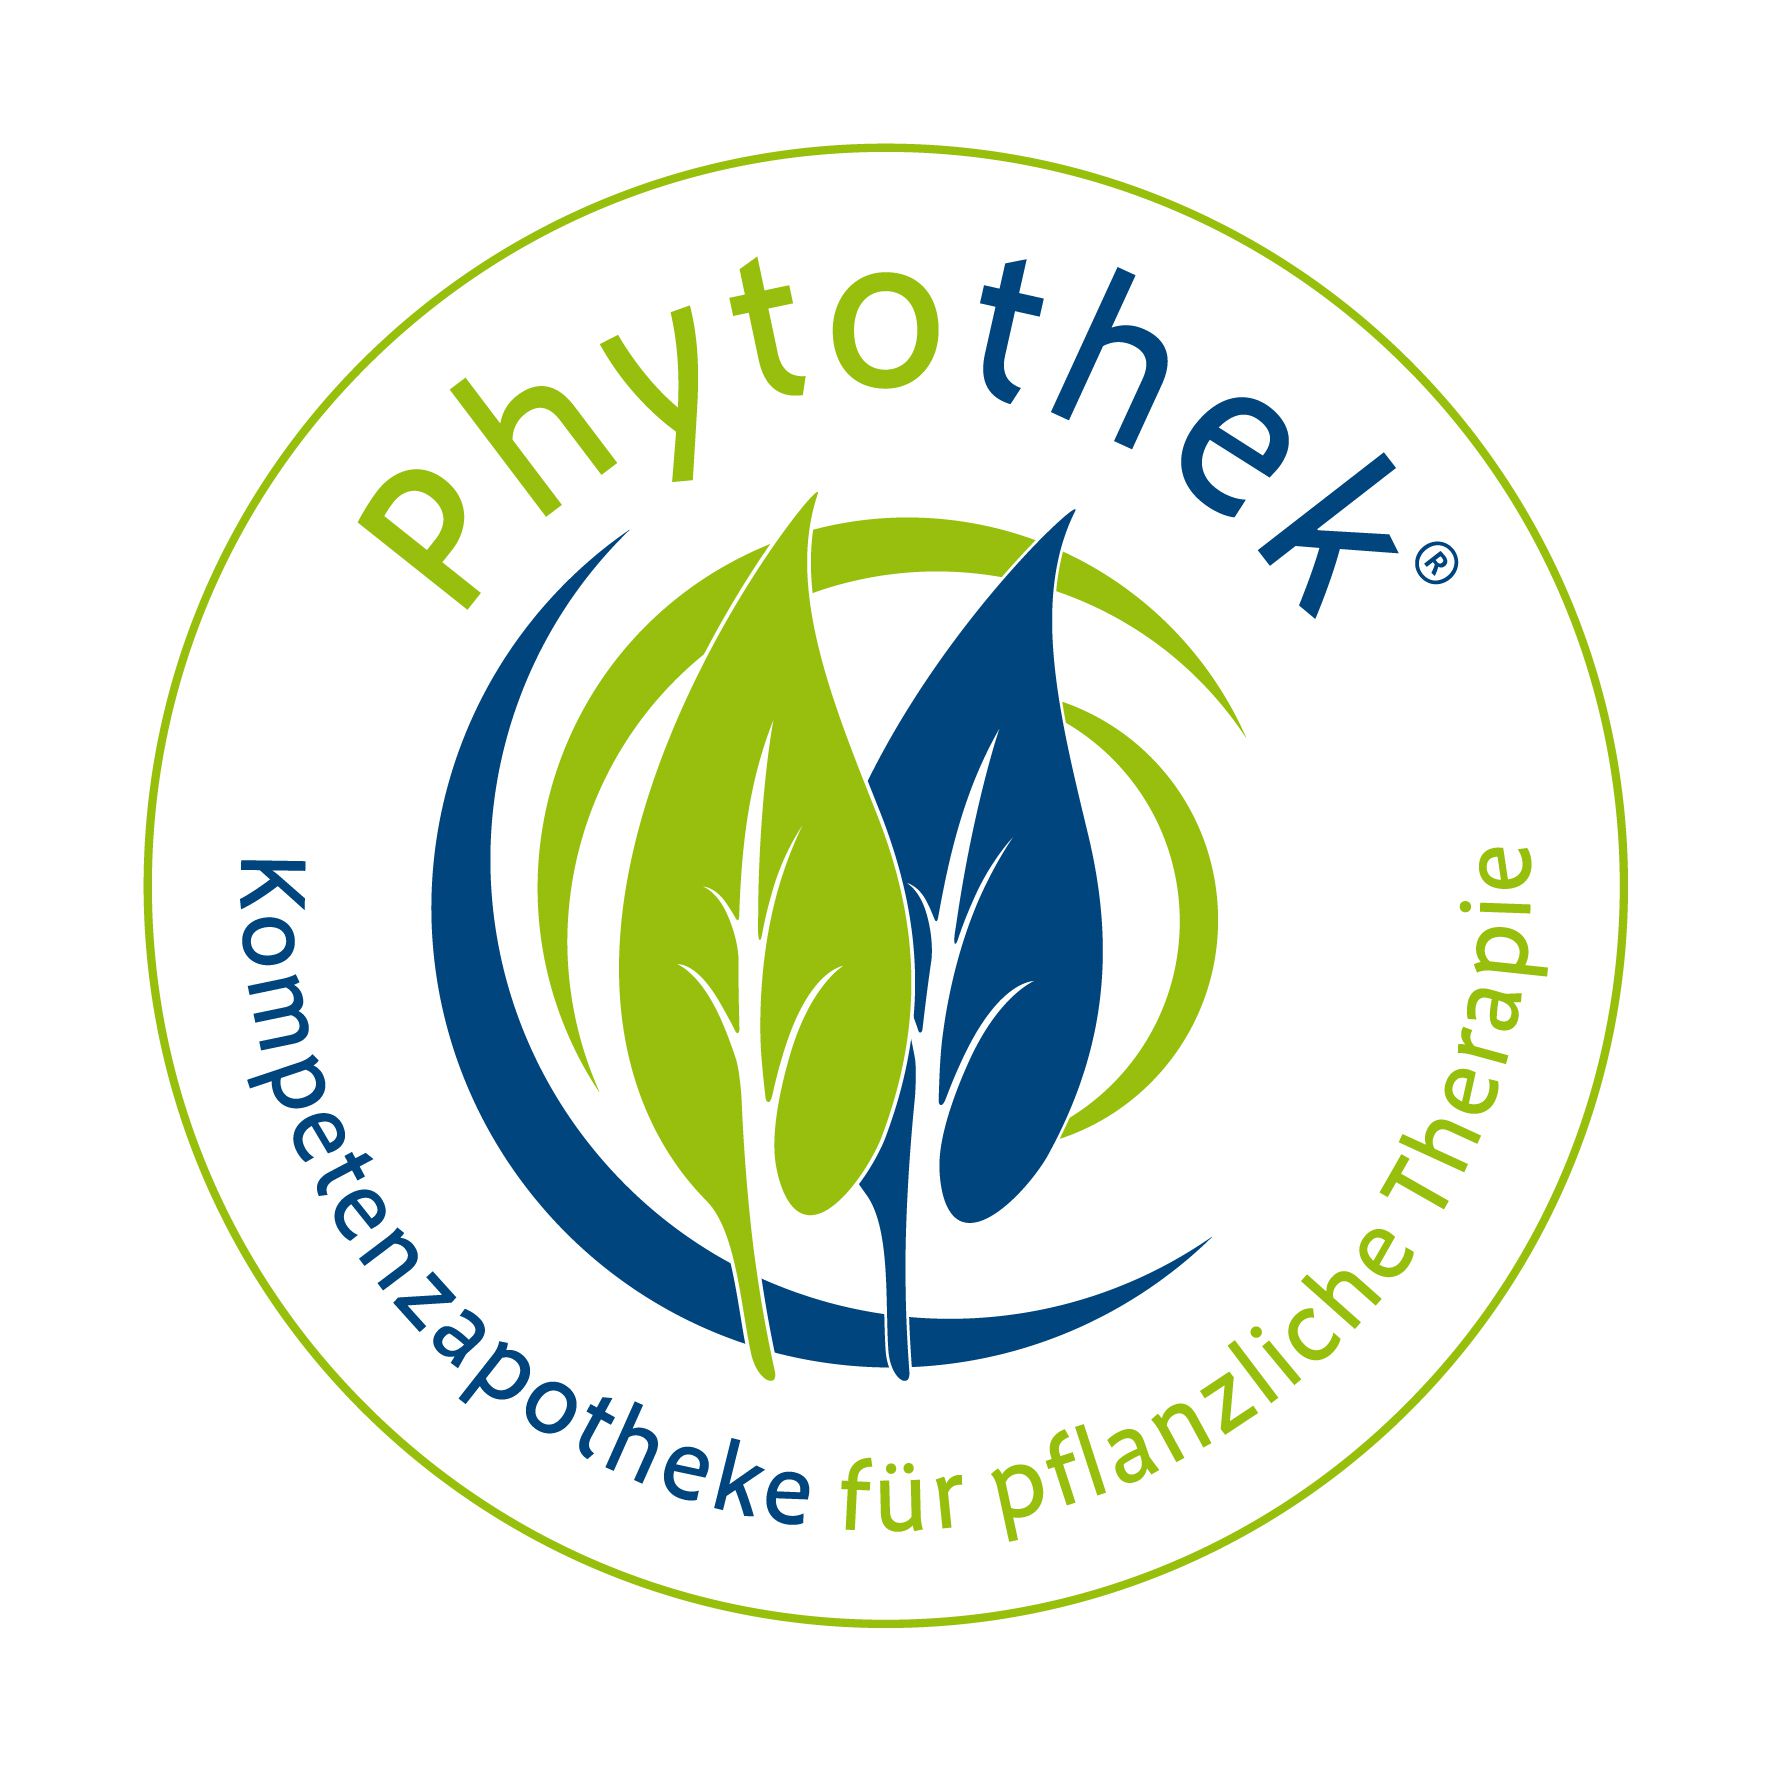 Phytothek